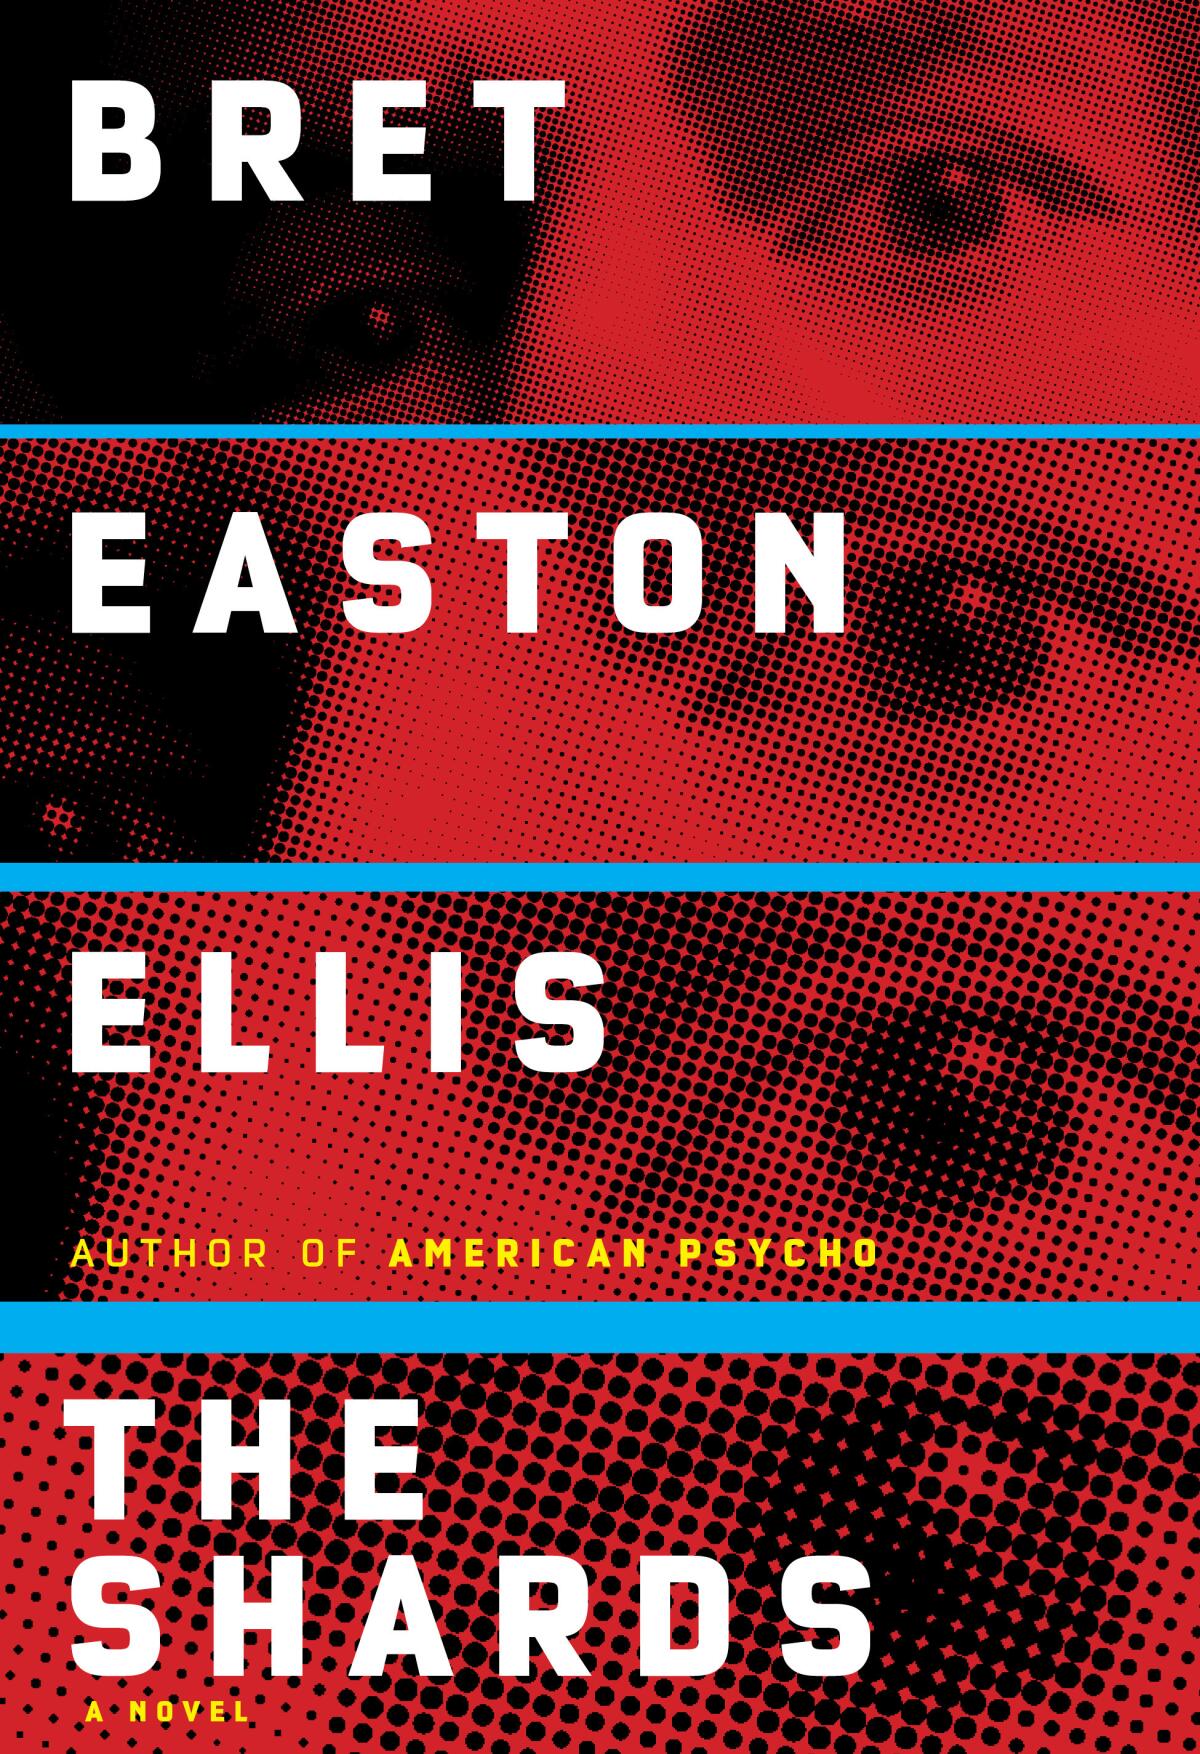 A book jacket for Bret Easton Ellis' "The Shards."